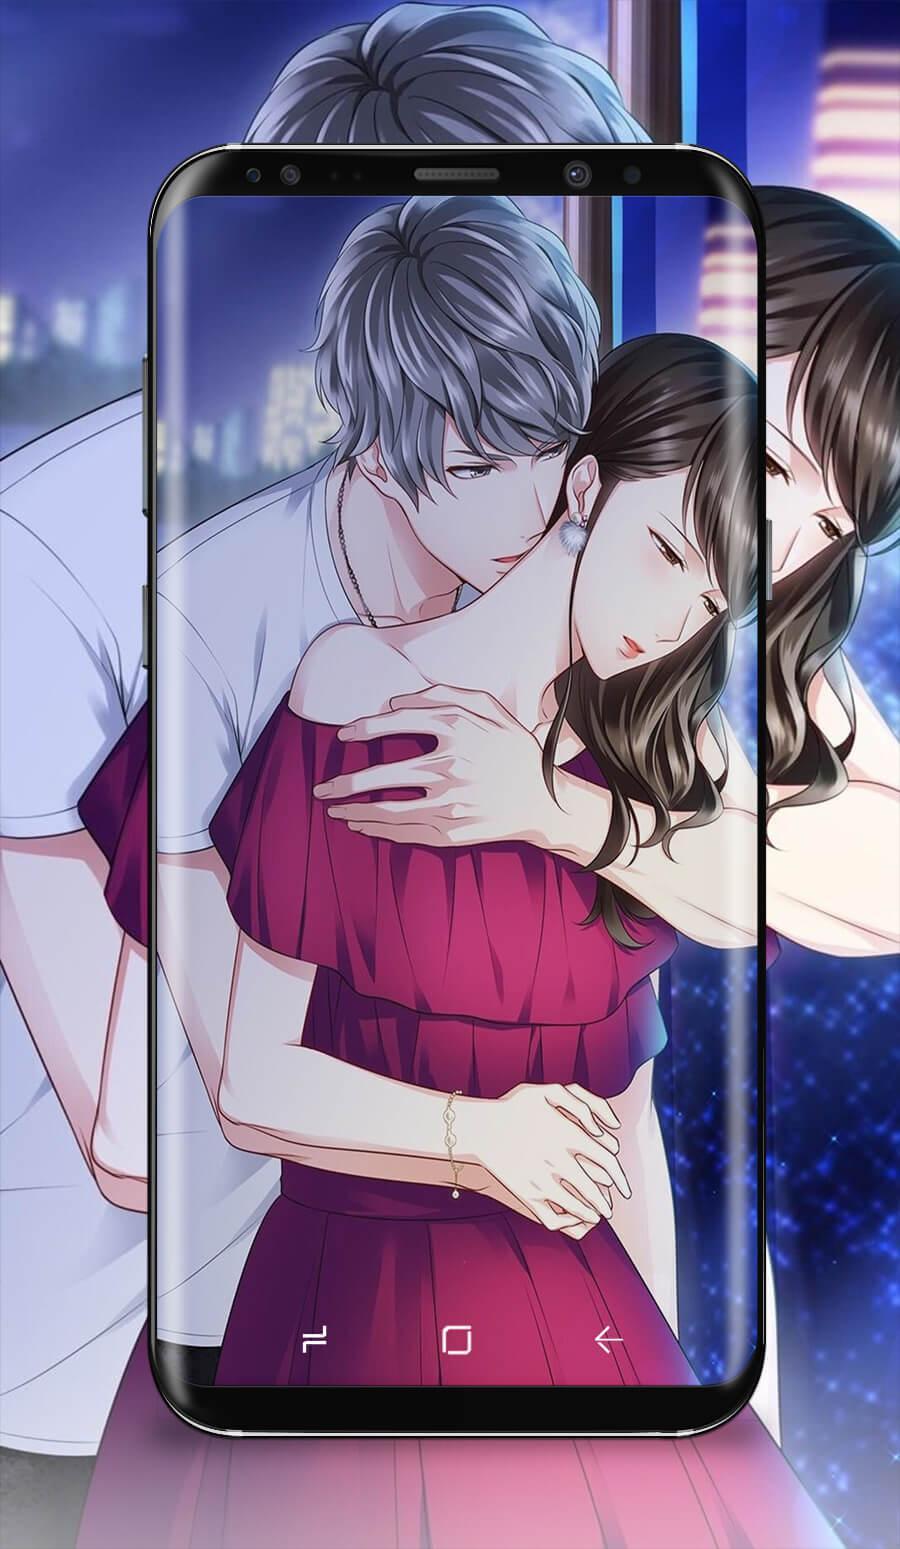 Android용 Anime Couple Kissing Wallpaper APK 다운로드